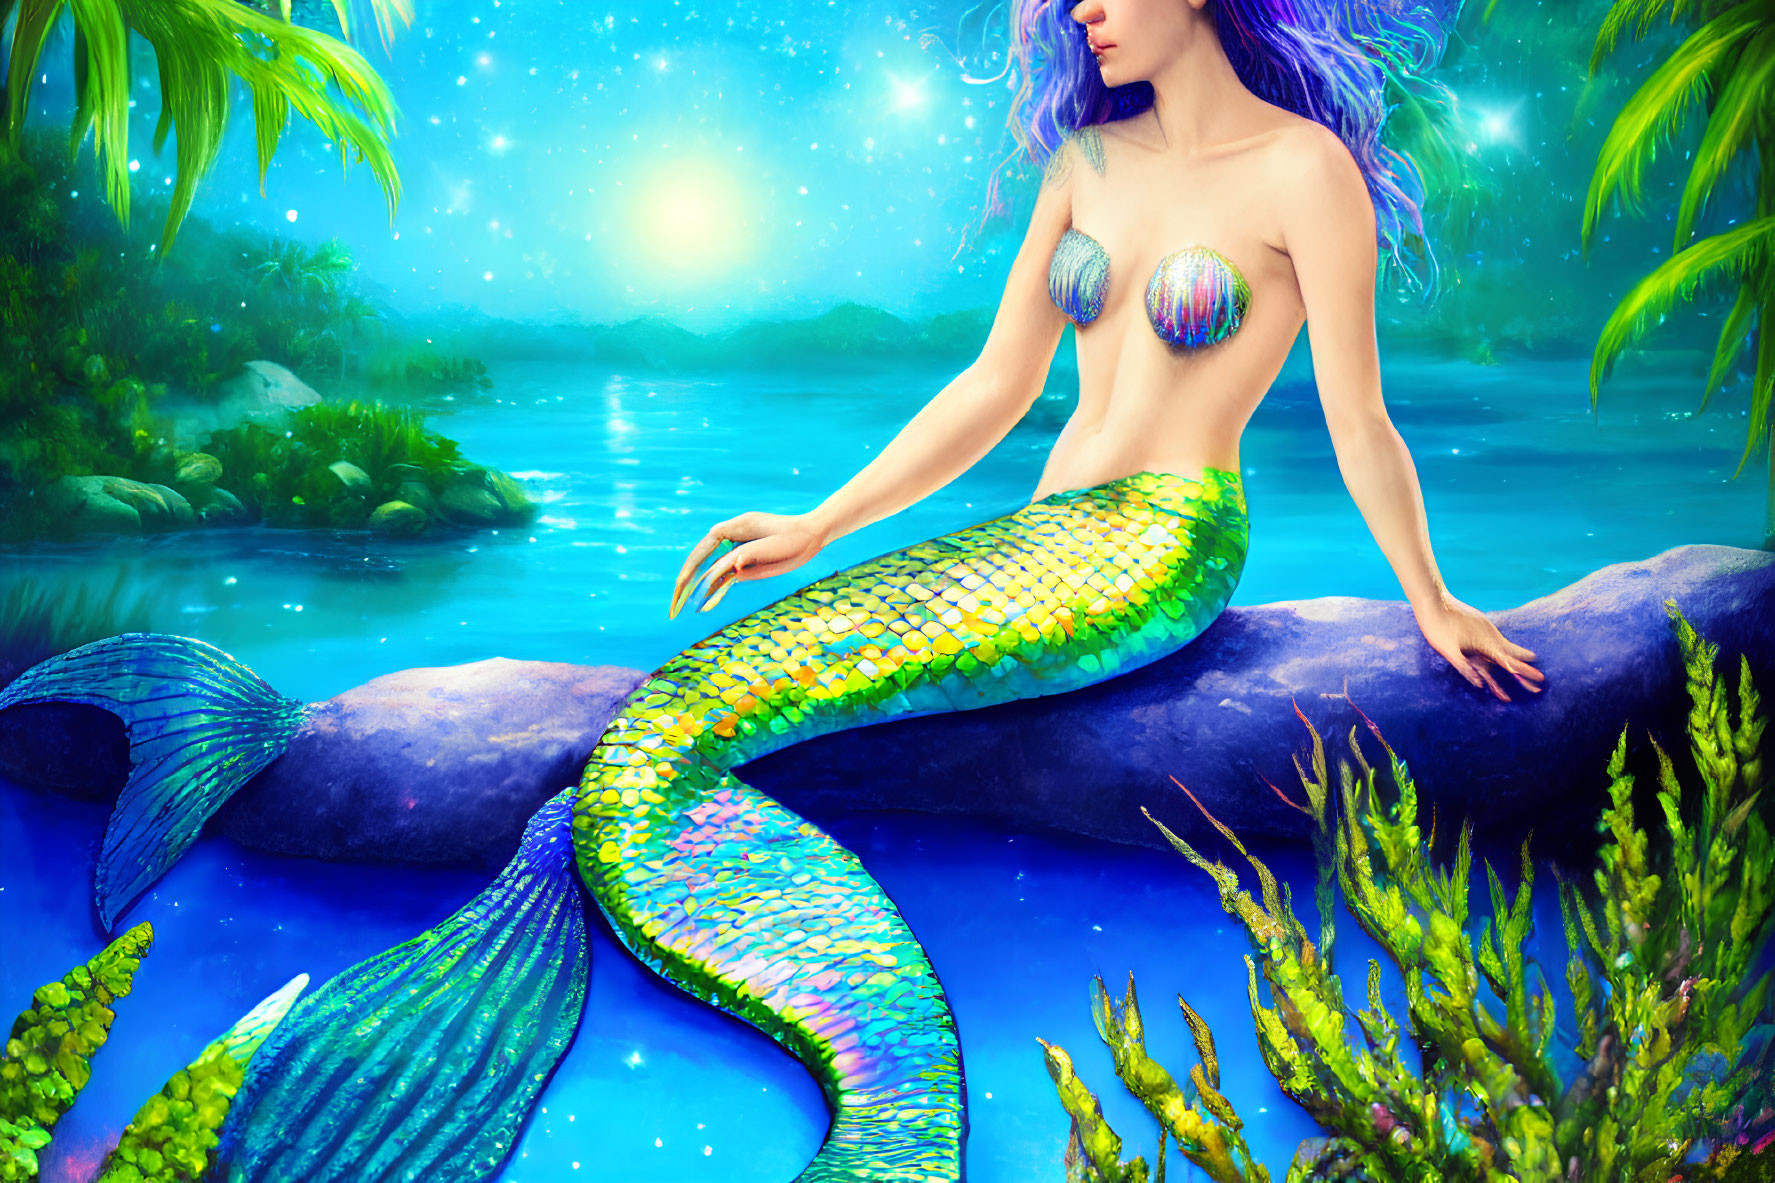 Vibrant mermaid illustration by serene lagoon